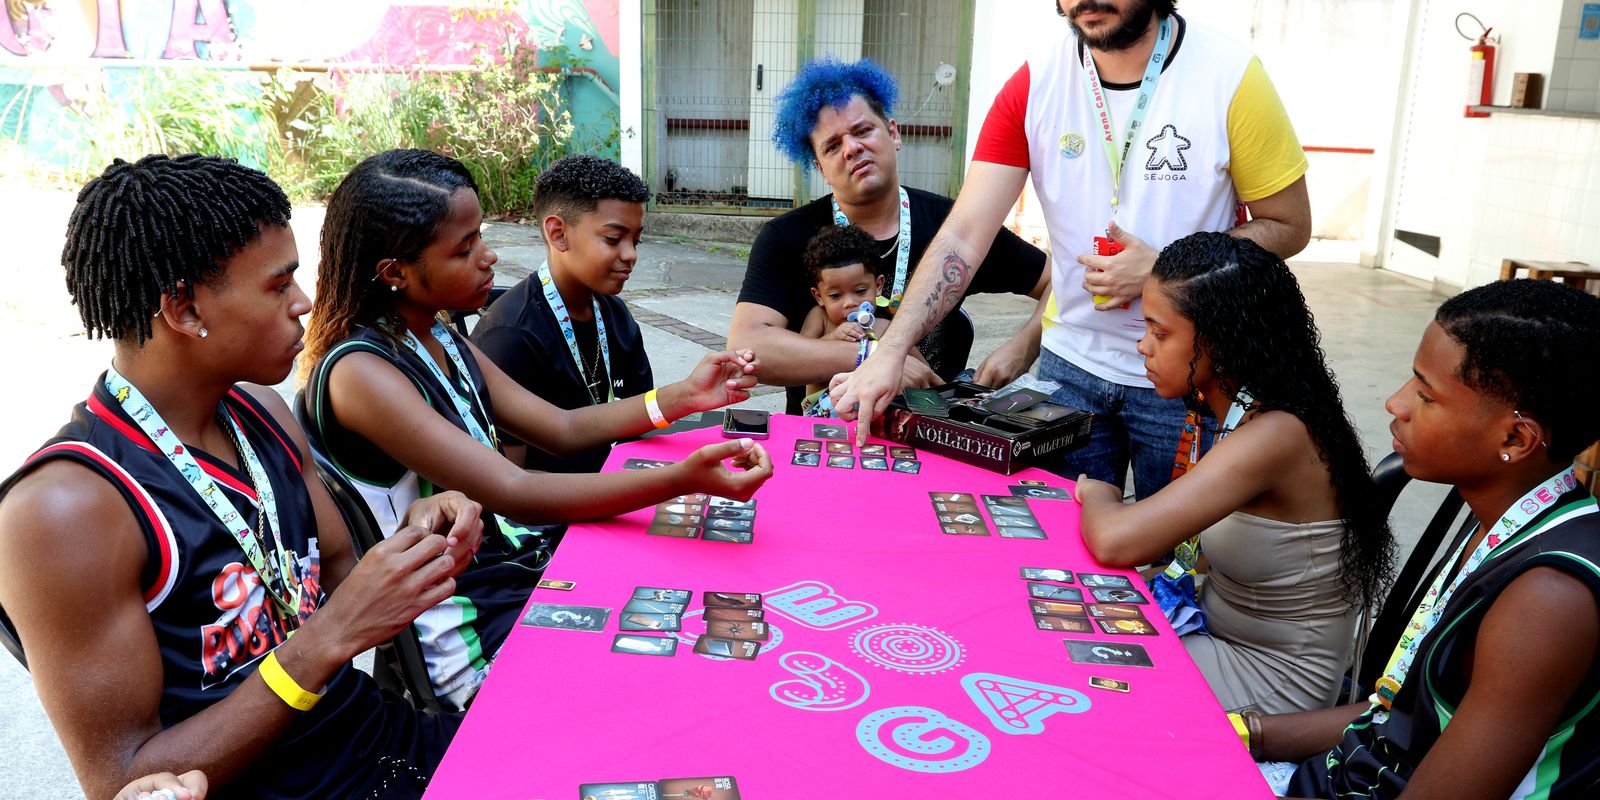 Campeonato Vivo Girlz On promove diversidade nos games